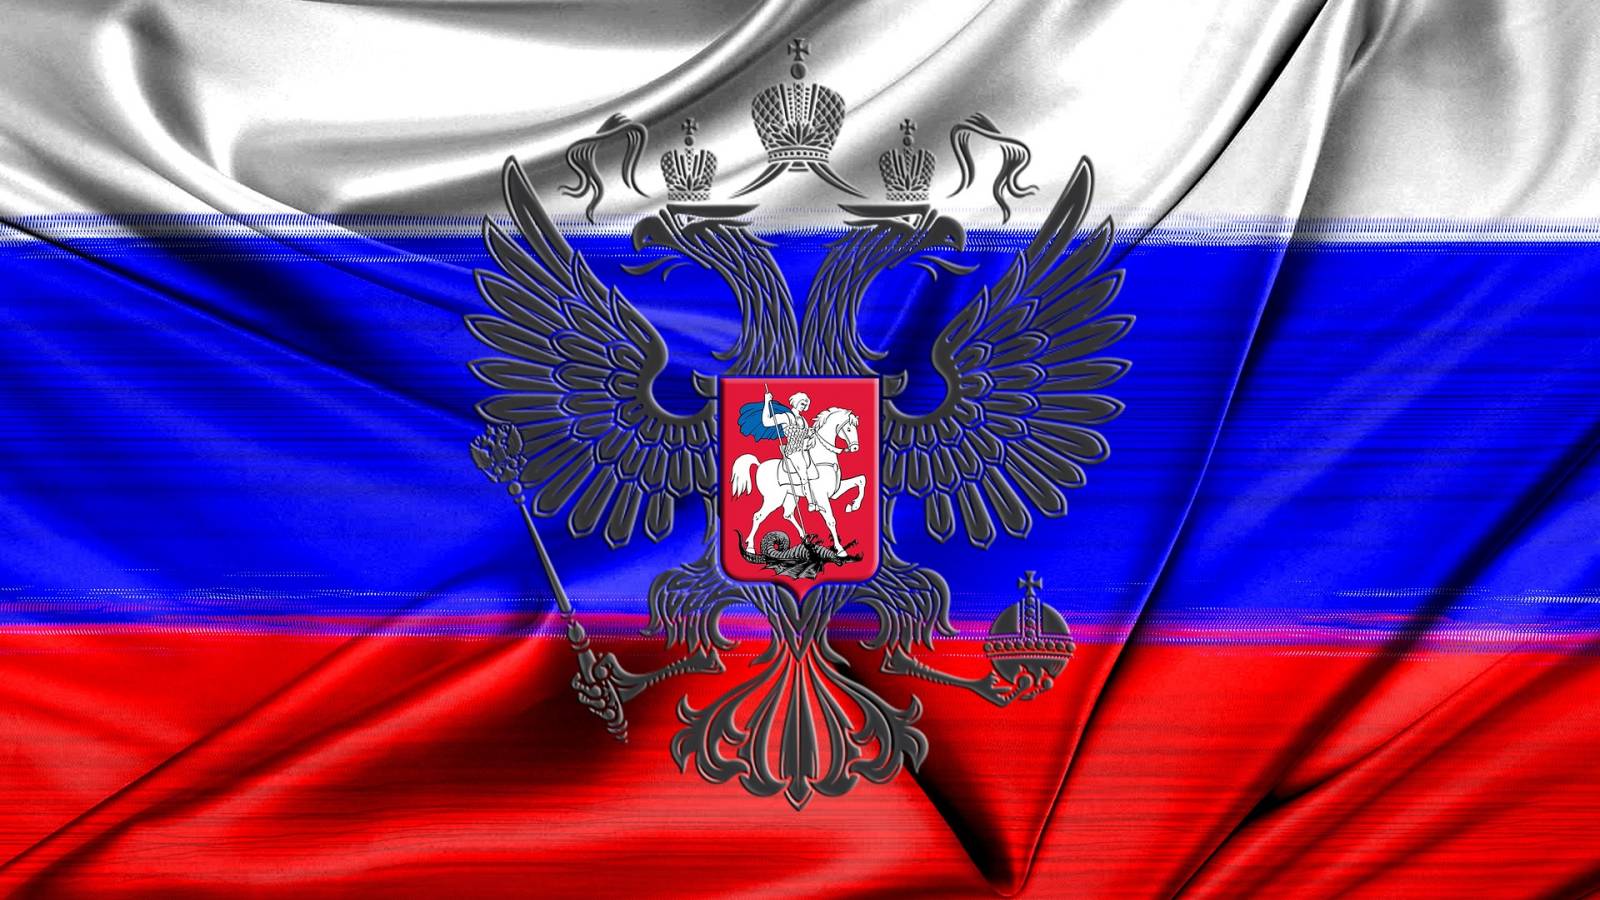 Rusia a Amenintat Georgia, ce Spune despre Vladimir Putin